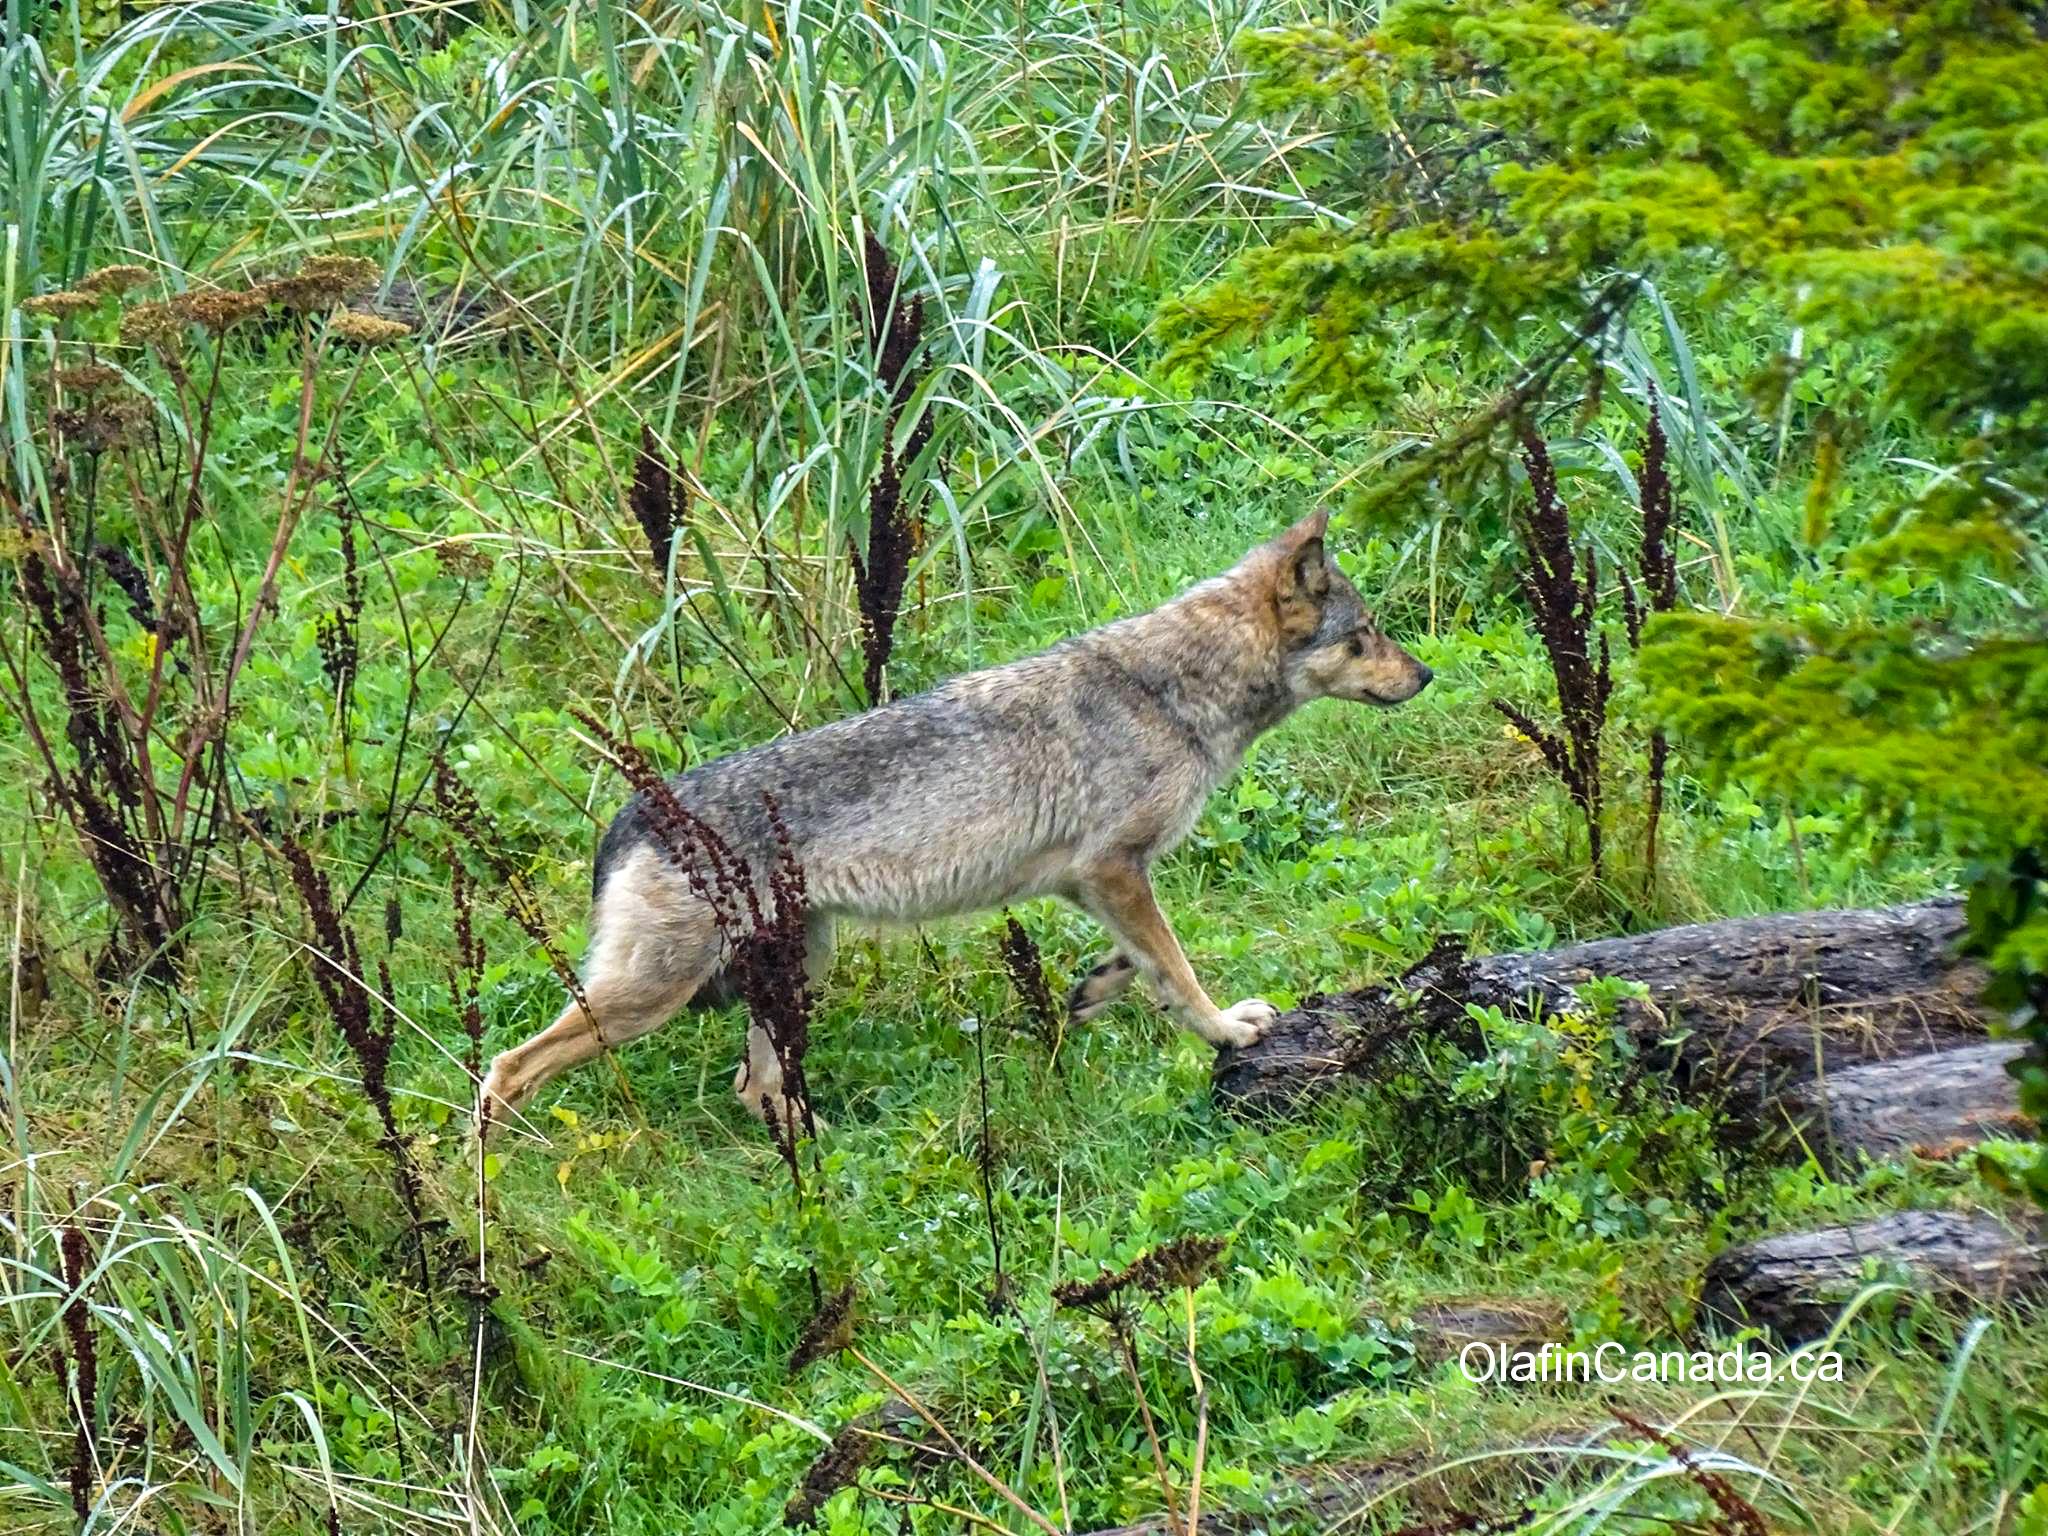 Coastal wolf near Ucluelet on Vancouver Island #olafincanada #britishcolumbia #discoverbc #wildlife #vancouverisland #wolf